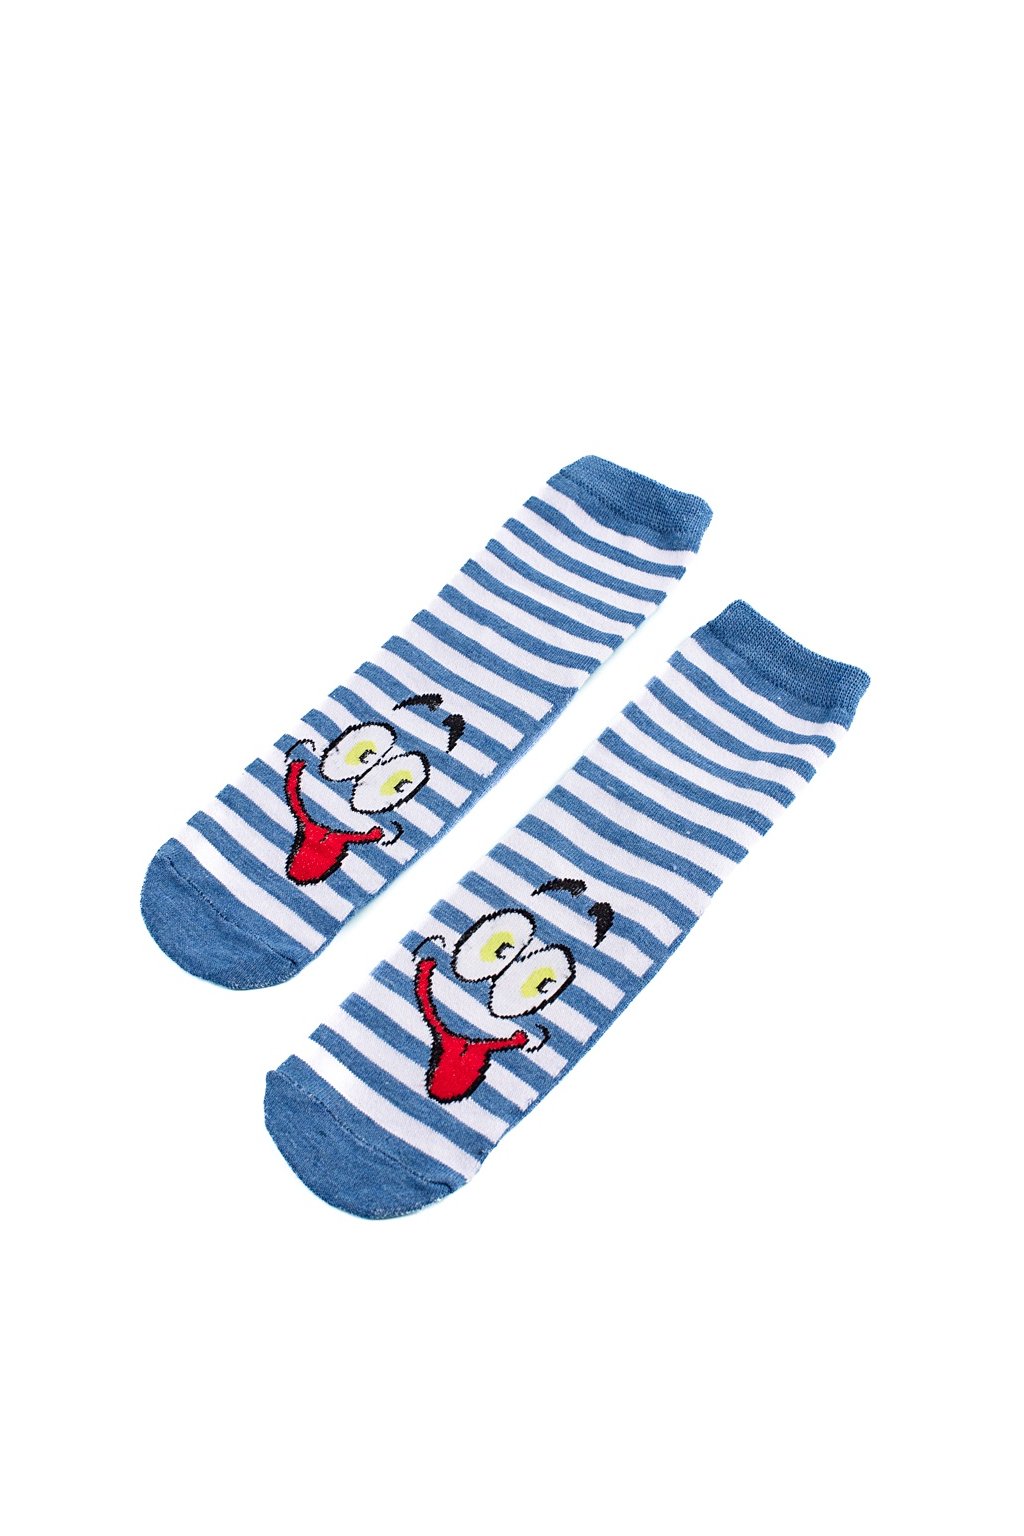 Modré ponožky Shelovet kod A6013-25DK.BL/R